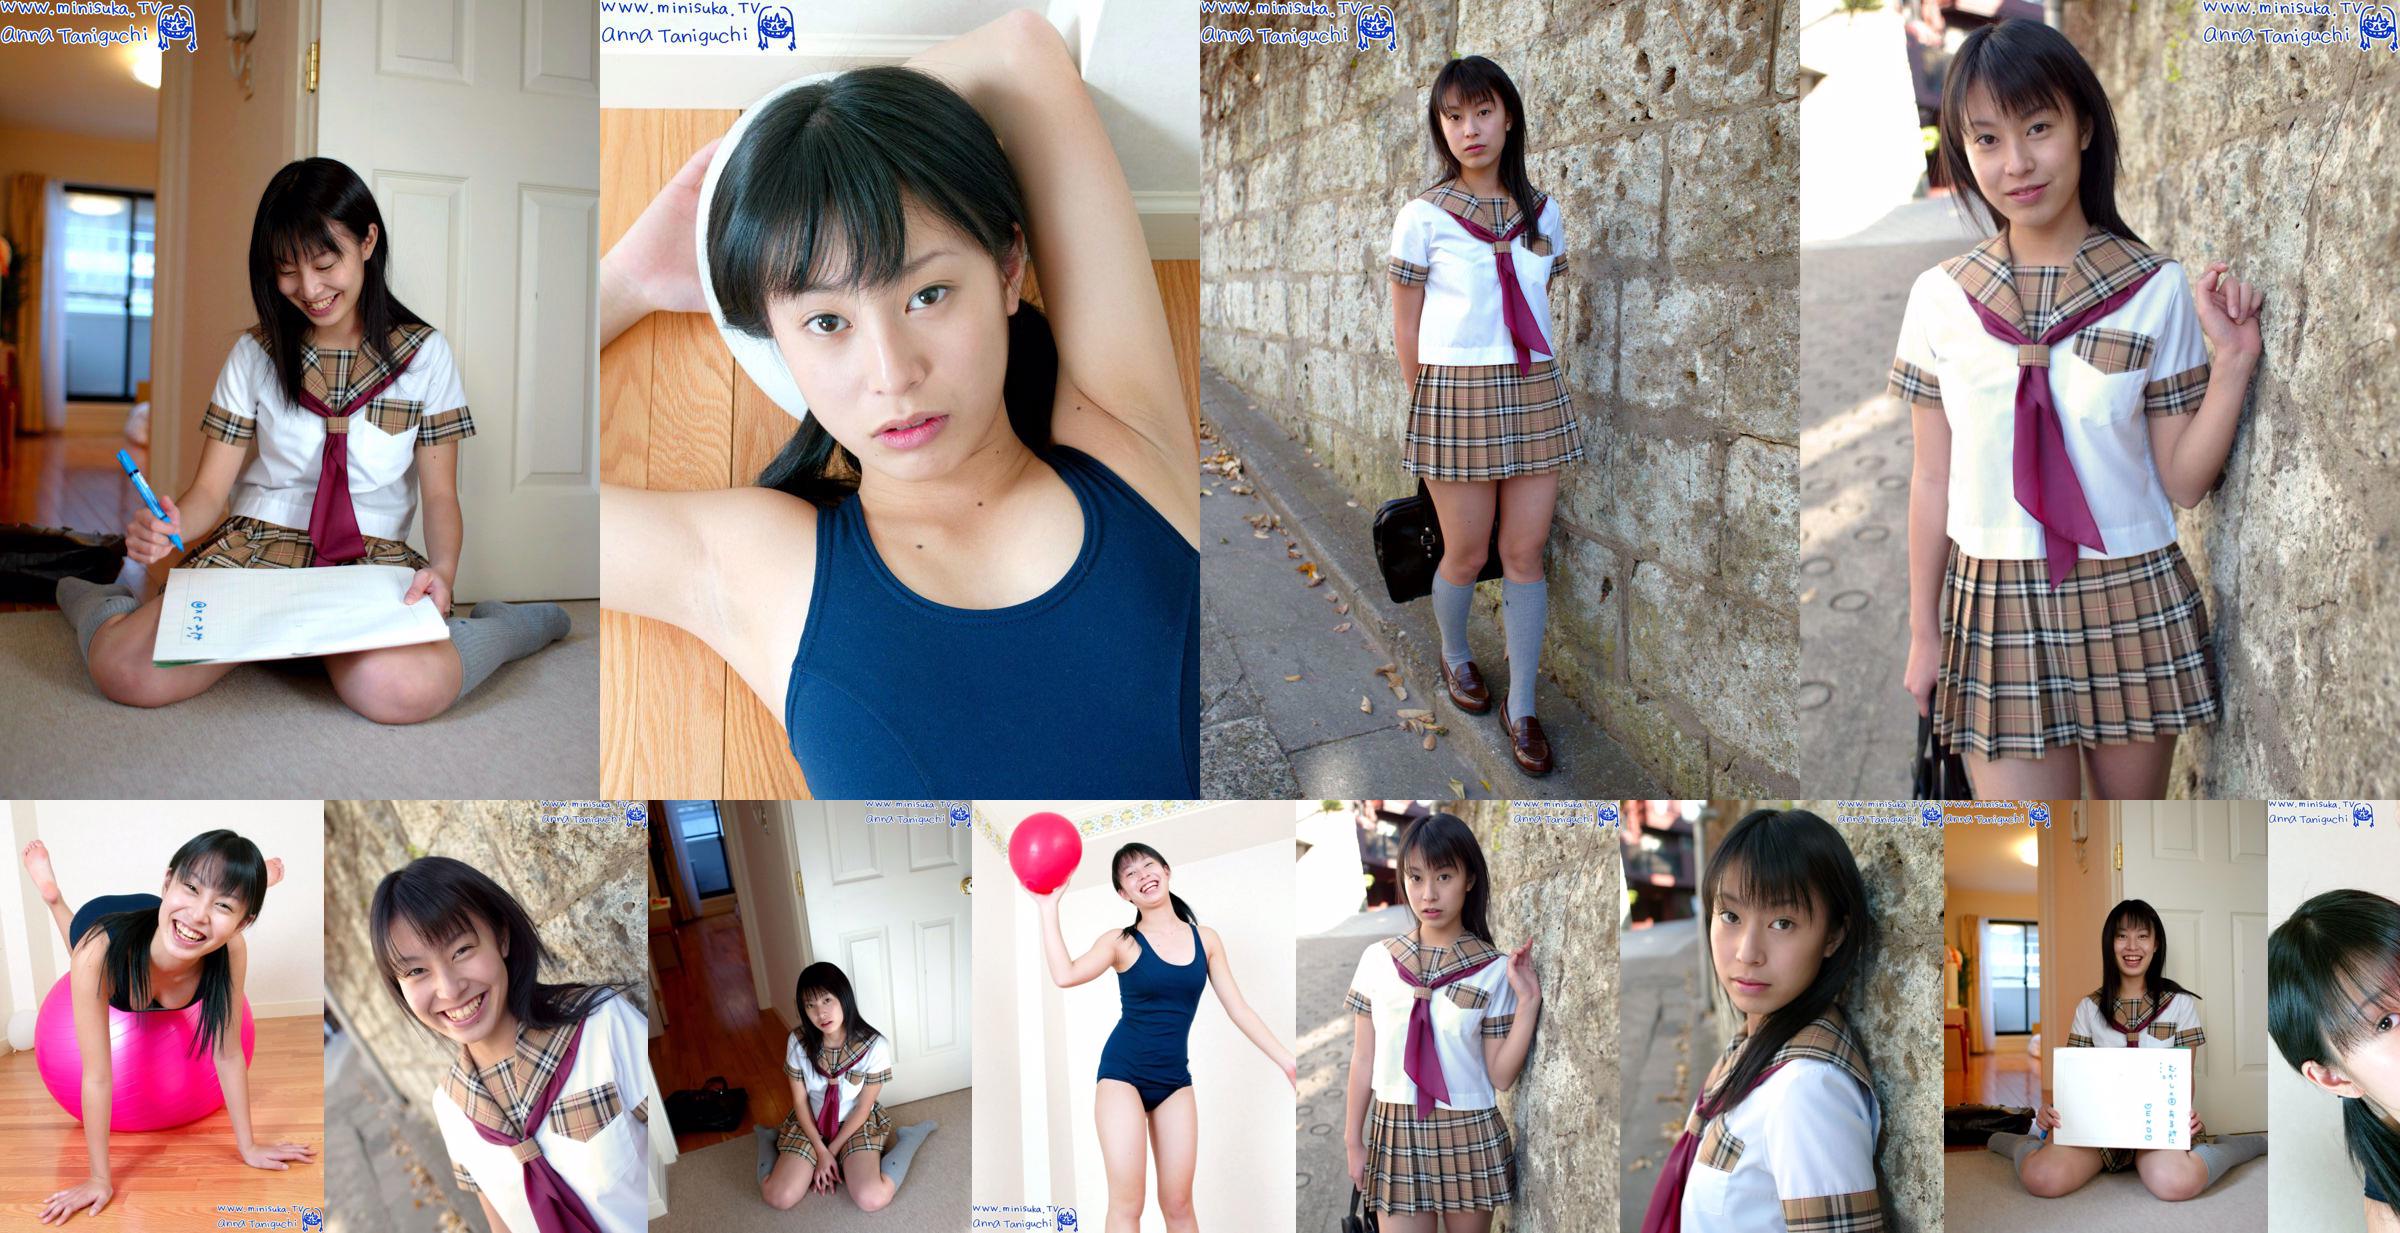 Anna Taniguchi Anna Taniguchi Aktives Highschool-Mädchen [Minisuka.tv] No.7a10e4 Seite 2